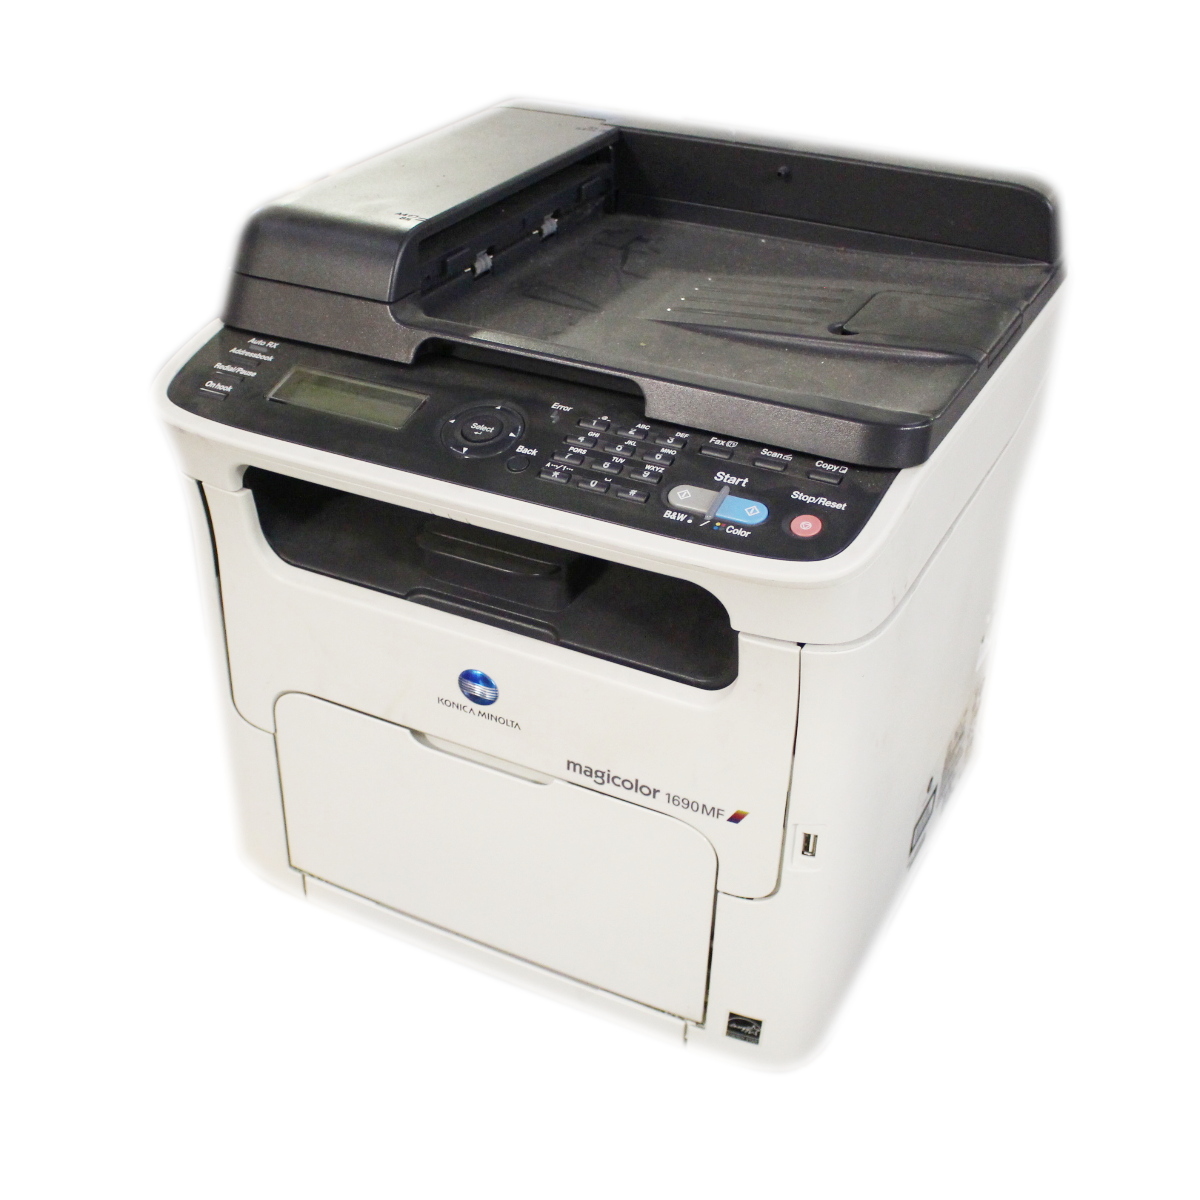 Software Printer Magicolor 1690Mf - Konica Minolta Fuser Unit Magicolor 1690mf for sale online ...